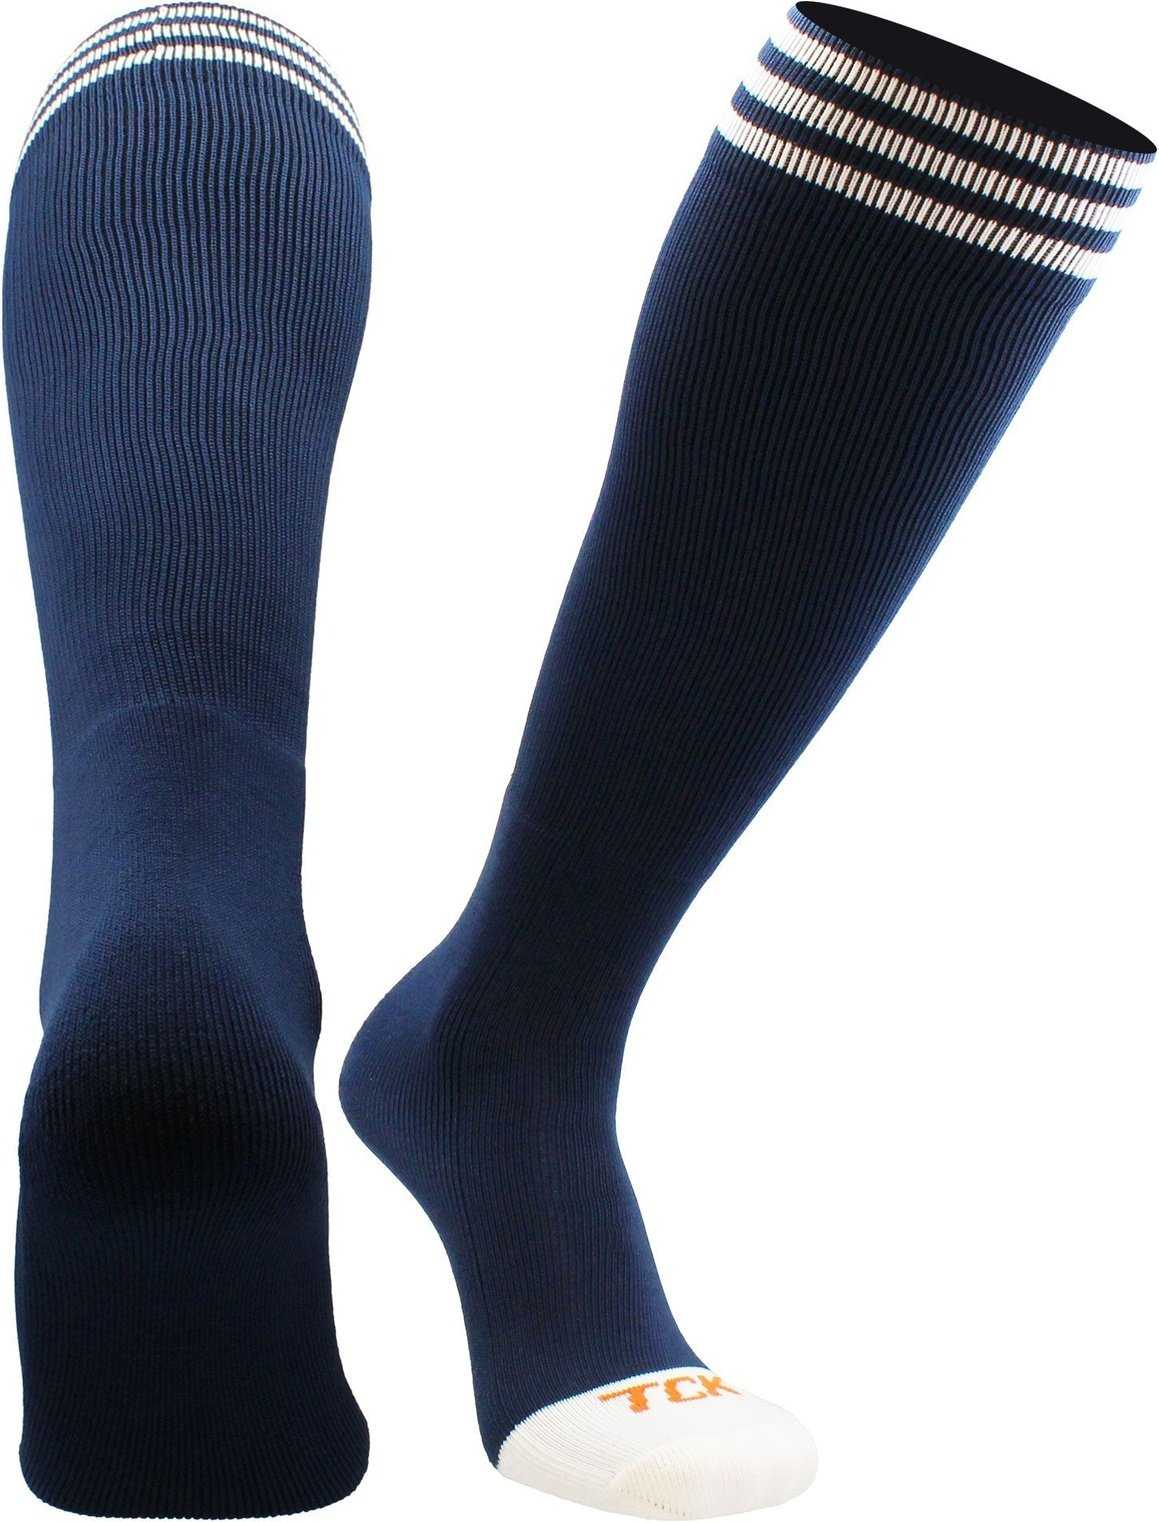 TCK Prosport Striped Knee High Tube Socks - Navy White - HIT a Double